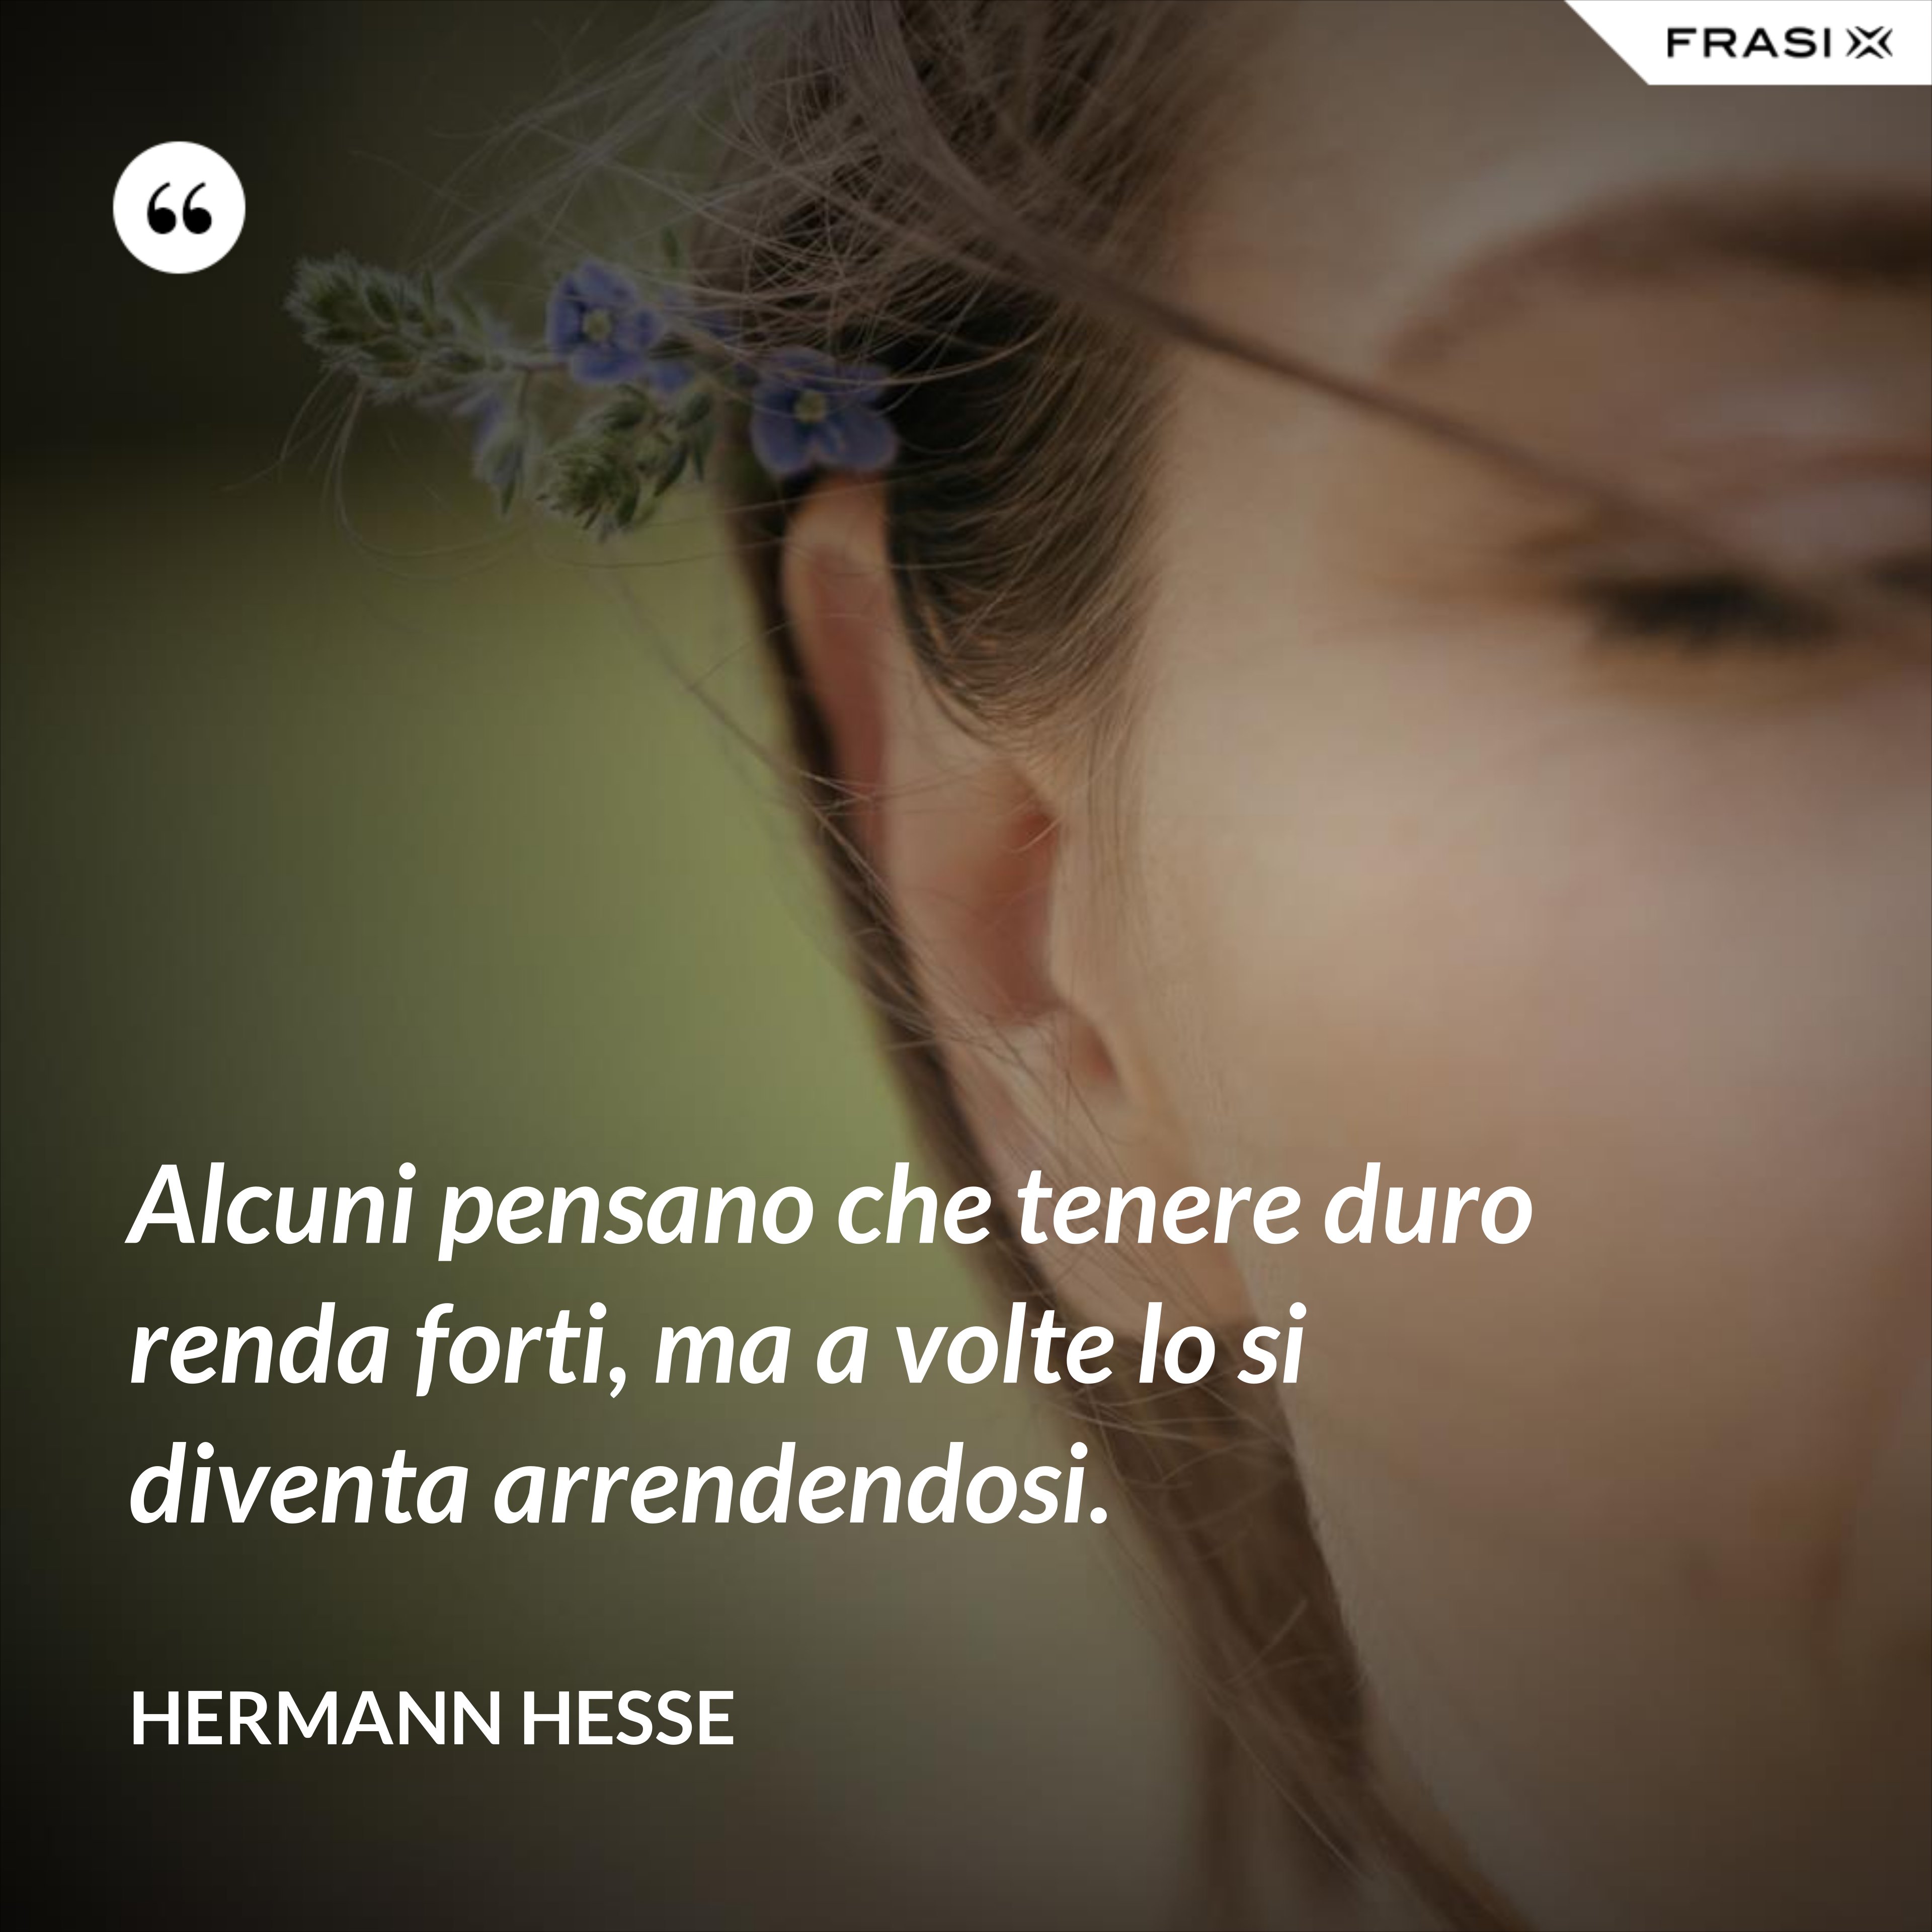 Alcuni pensano che tenere duro renda forti, ma a volte lo si diventa arrendendosi. - Hermann Hesse